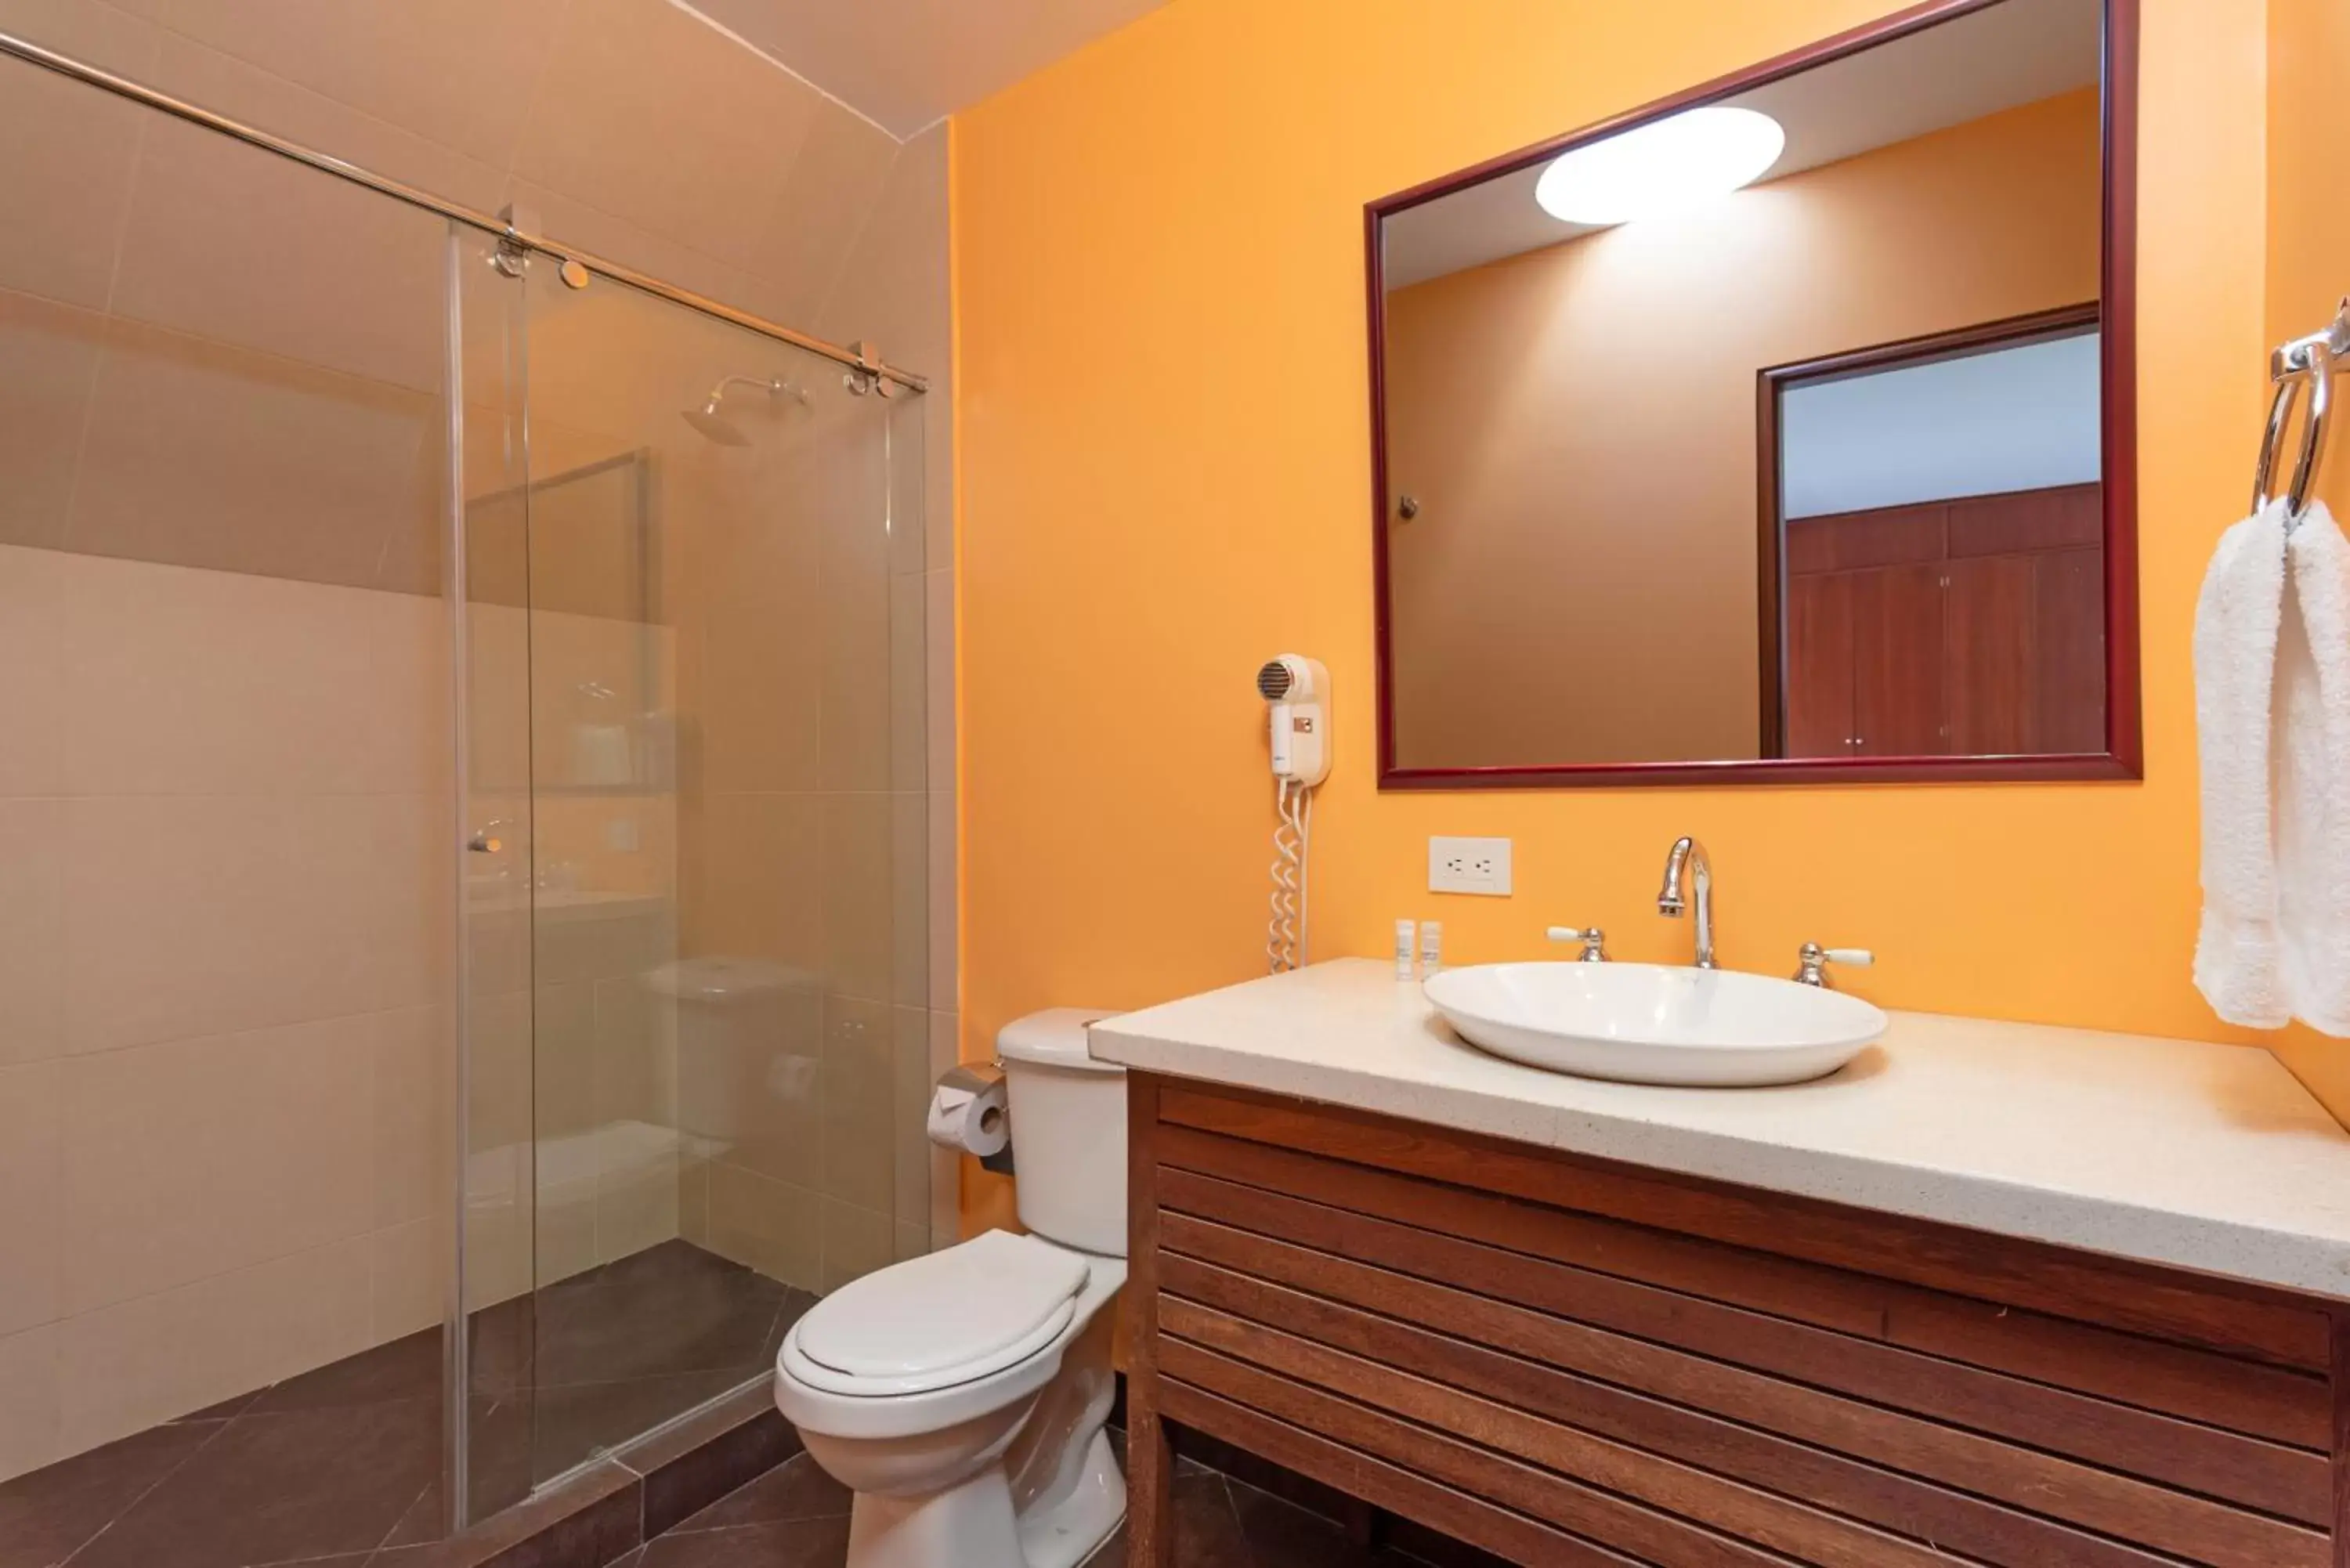 Toilet, Bathroom in GIO Suites Parque 93 Bogotá